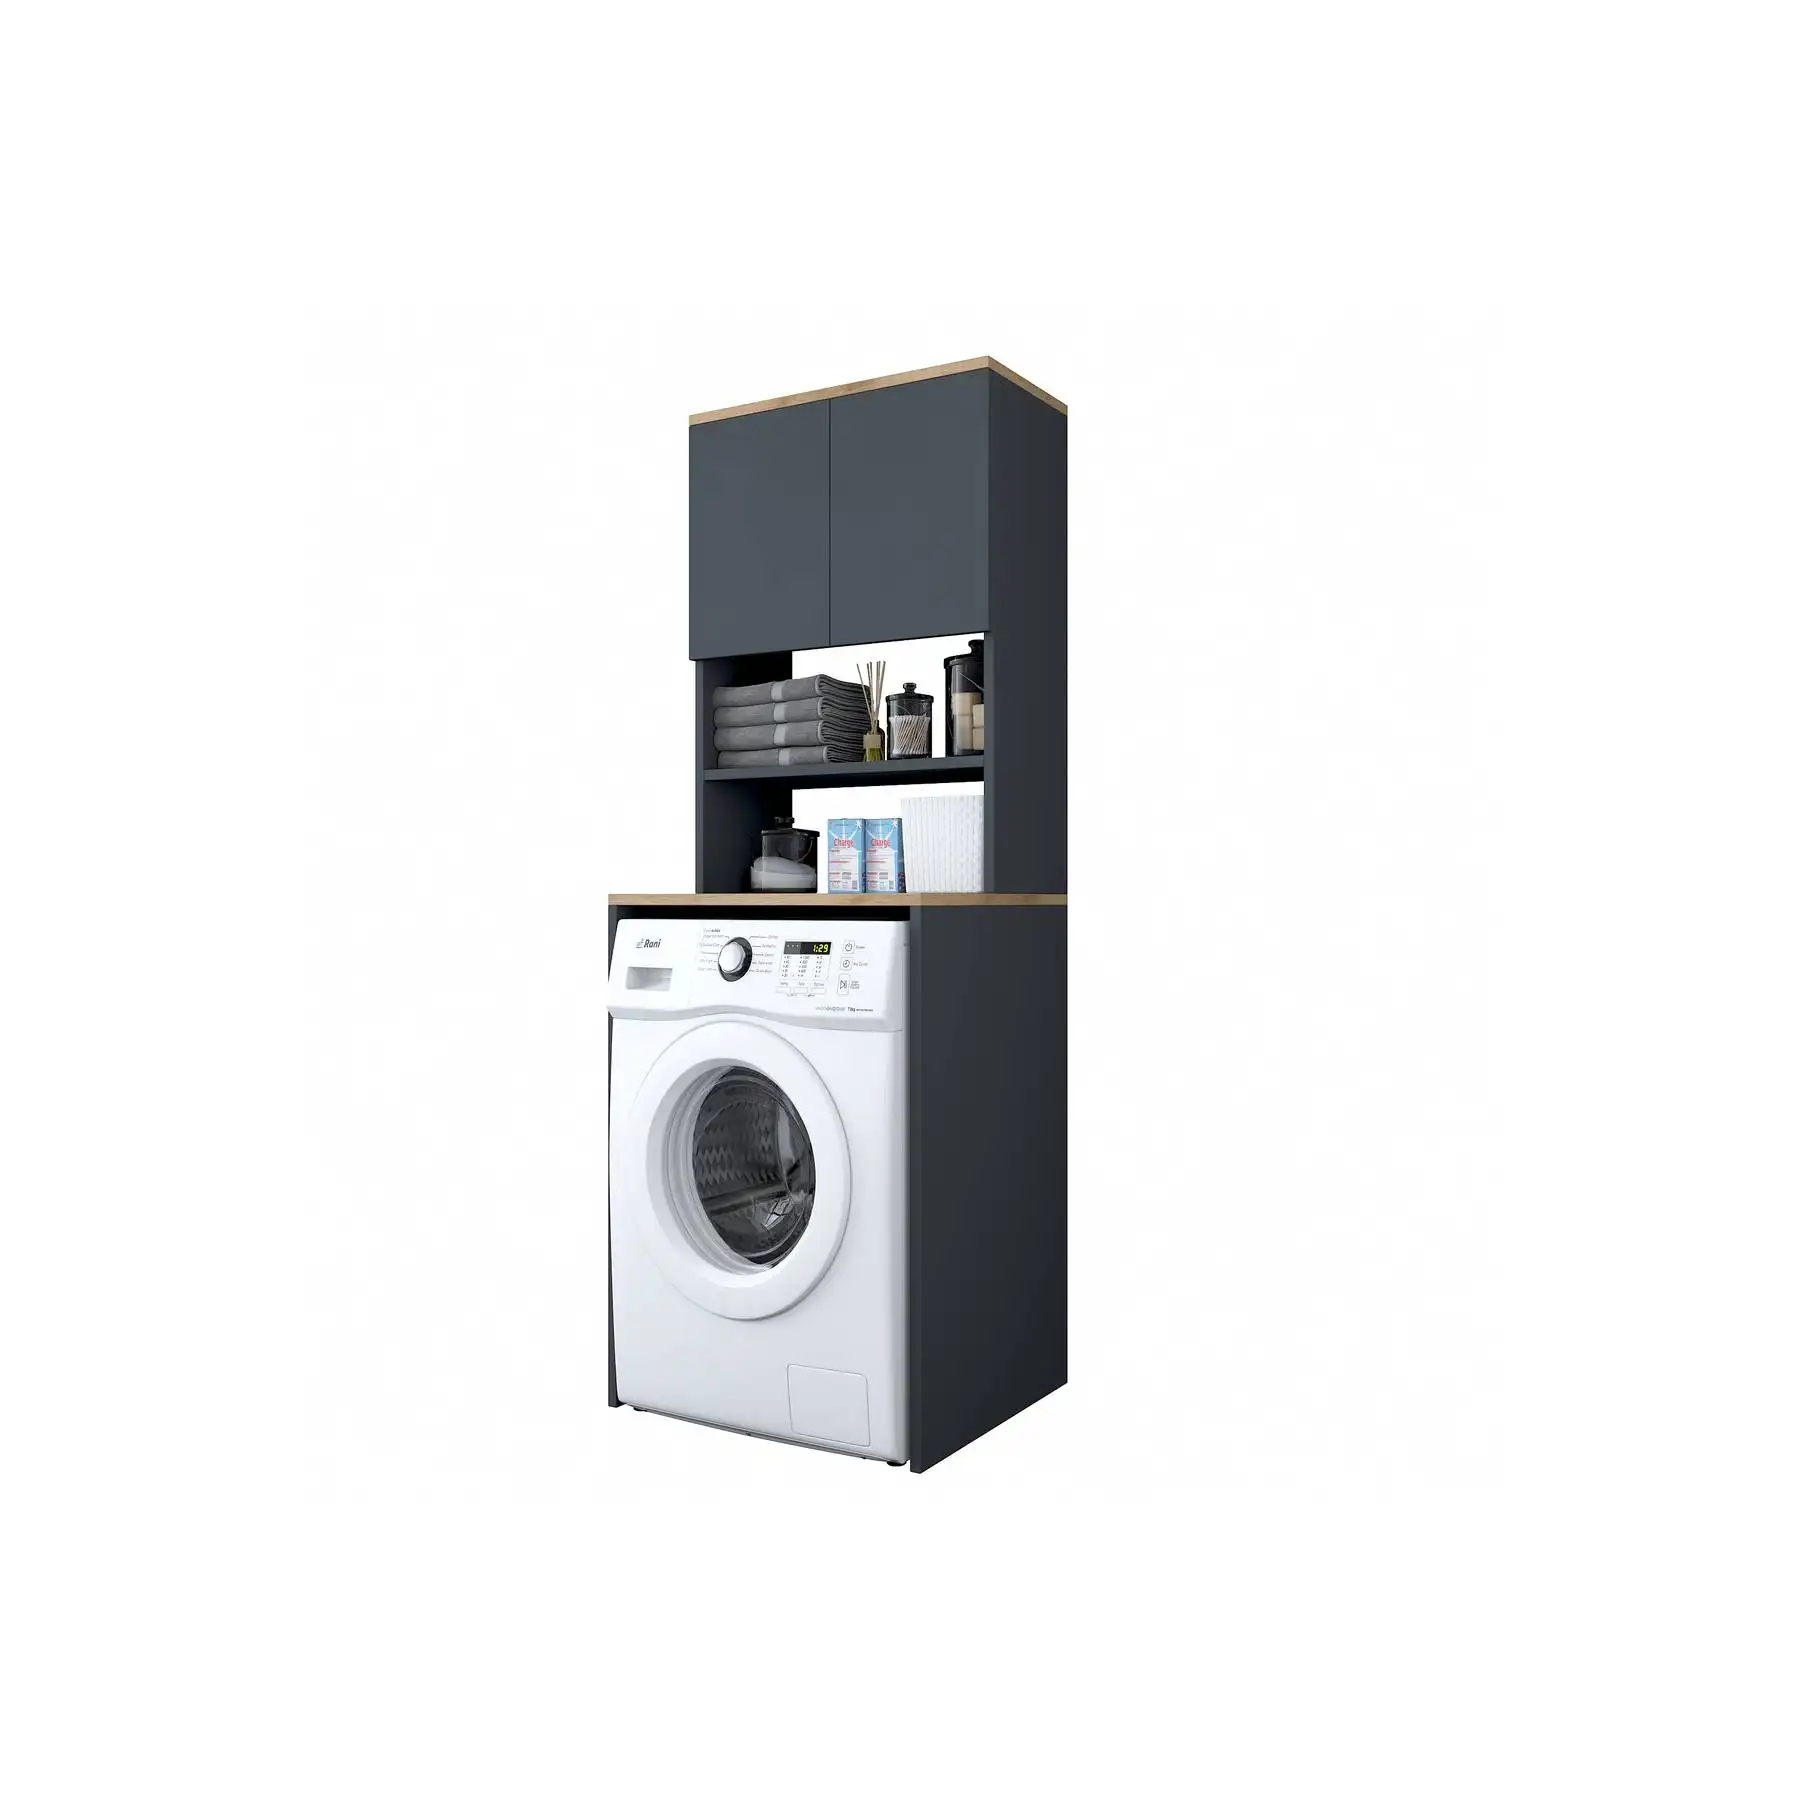 Rani KD101 çamaşır makinesi dolabı 3 raflar ile 2 kapılar için çamaşır banyo koyu gri s-ceviz renk toptan mobilya 2674